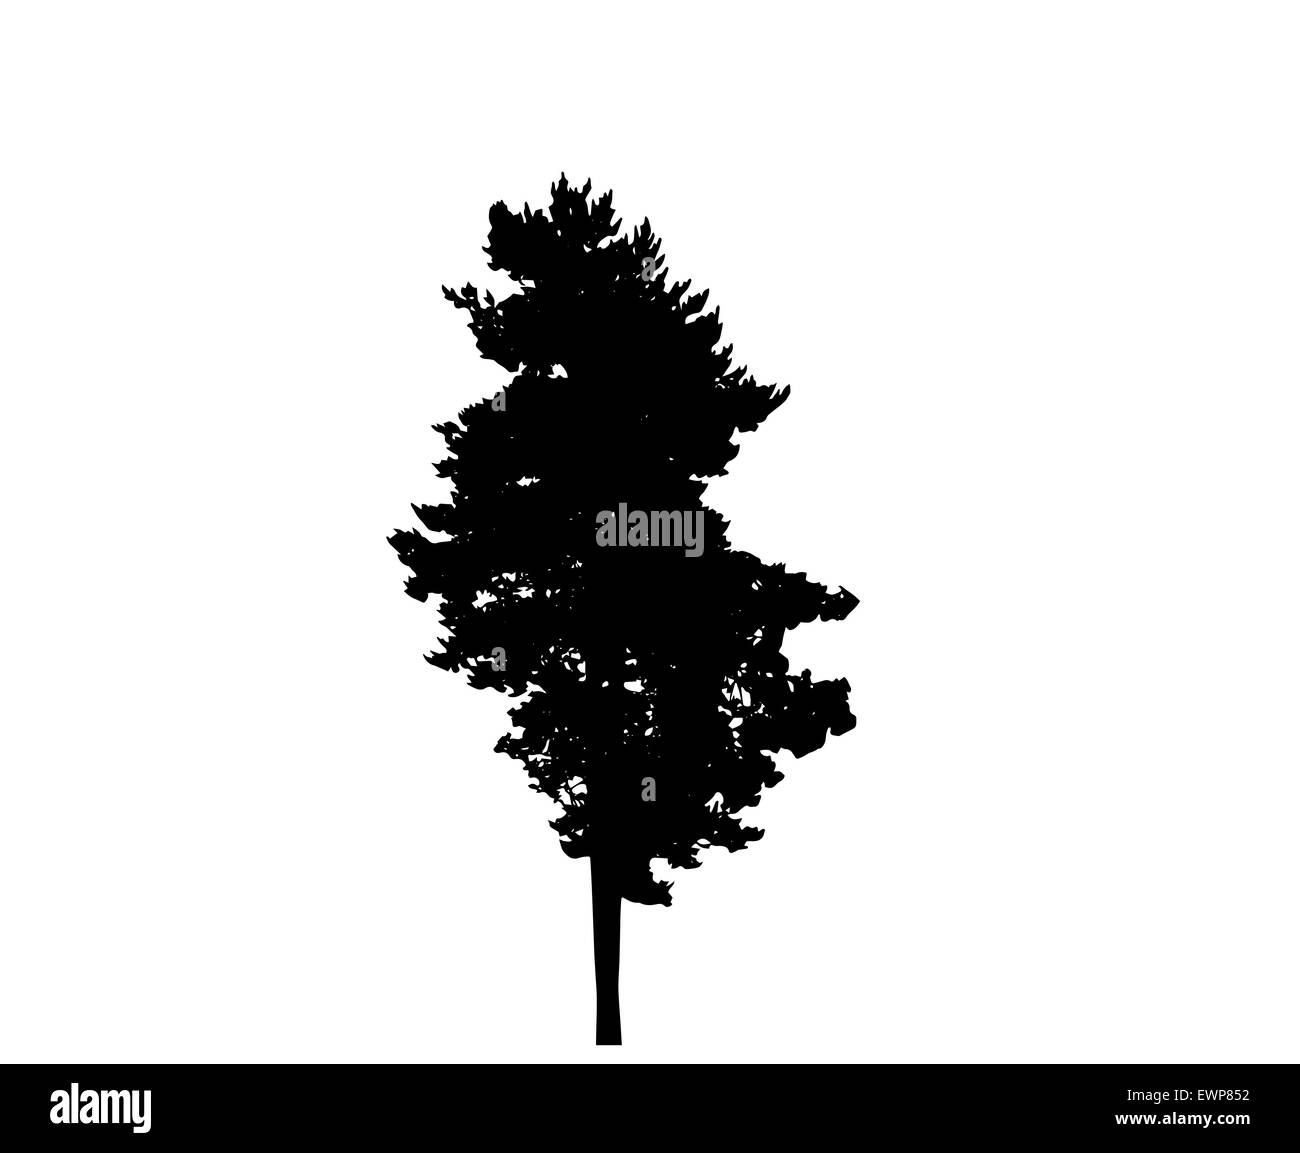 Baum-Silhouette isoliert auf weißem Migrationshintergrund. Vektor-Illustration Stock Vektor